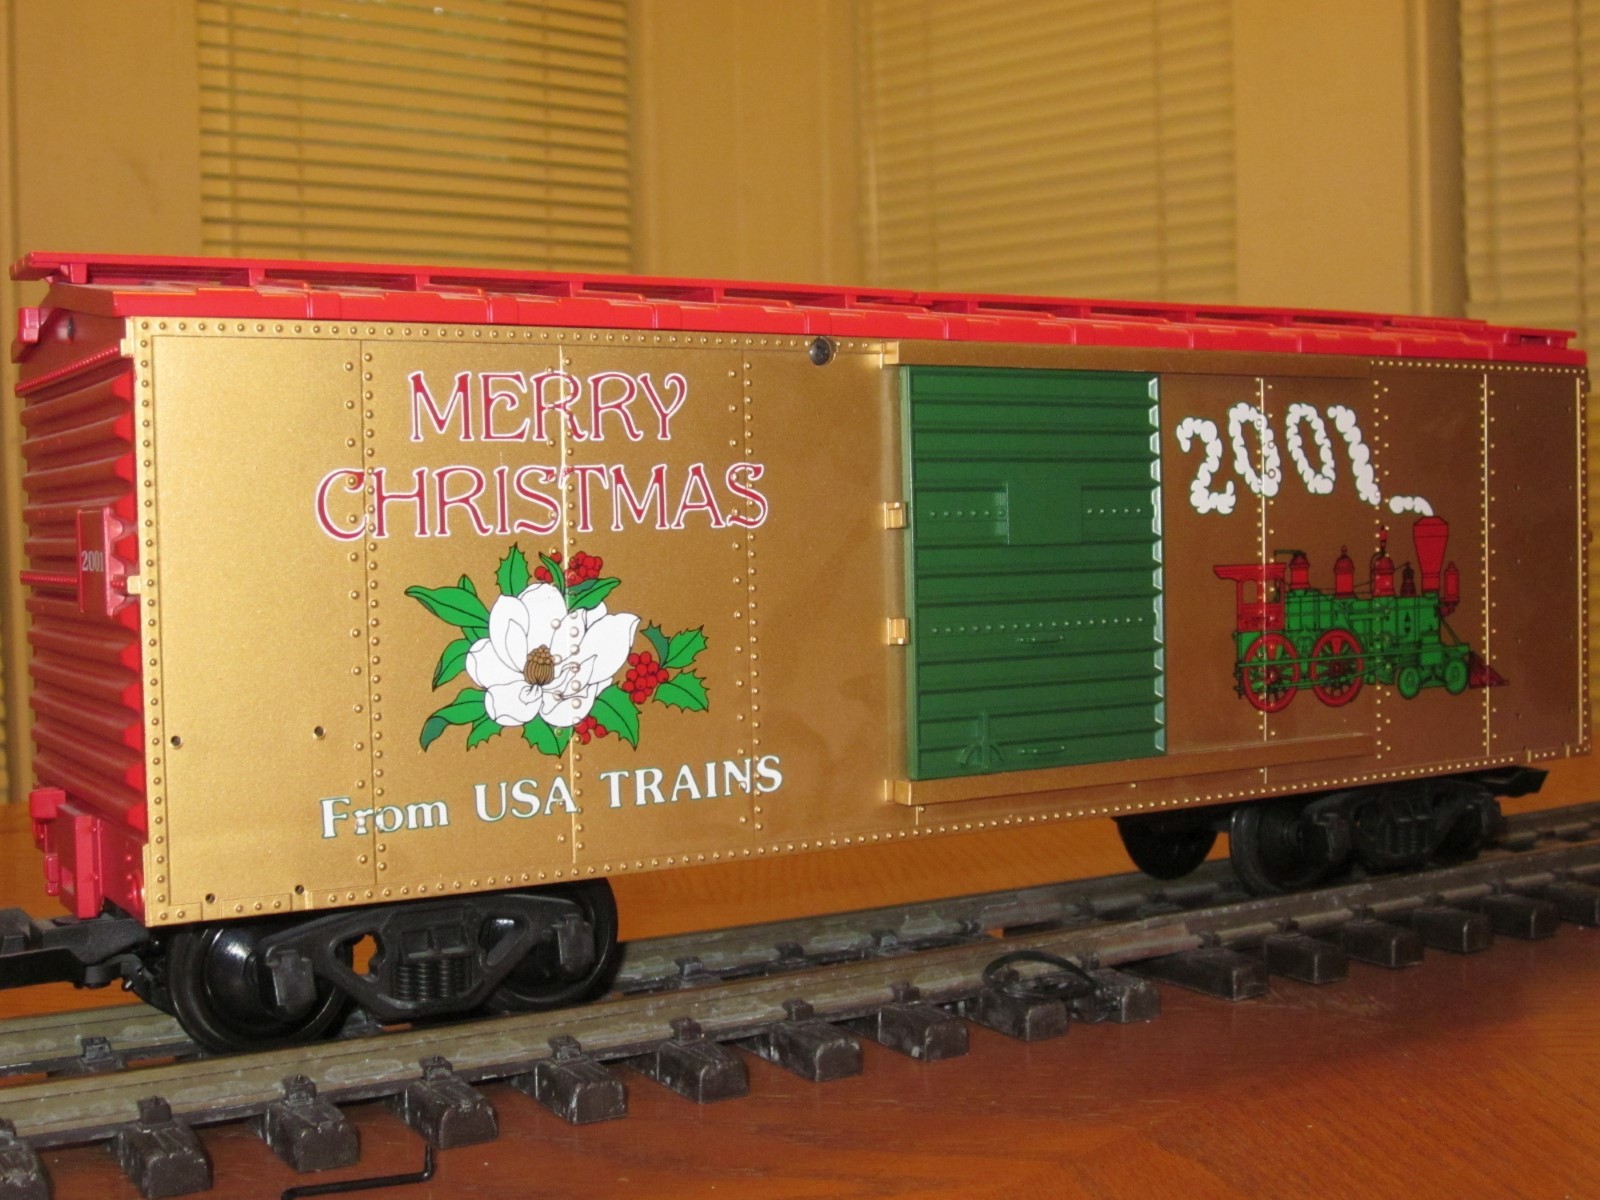 2001 Annual Christmas R13019 Box Car